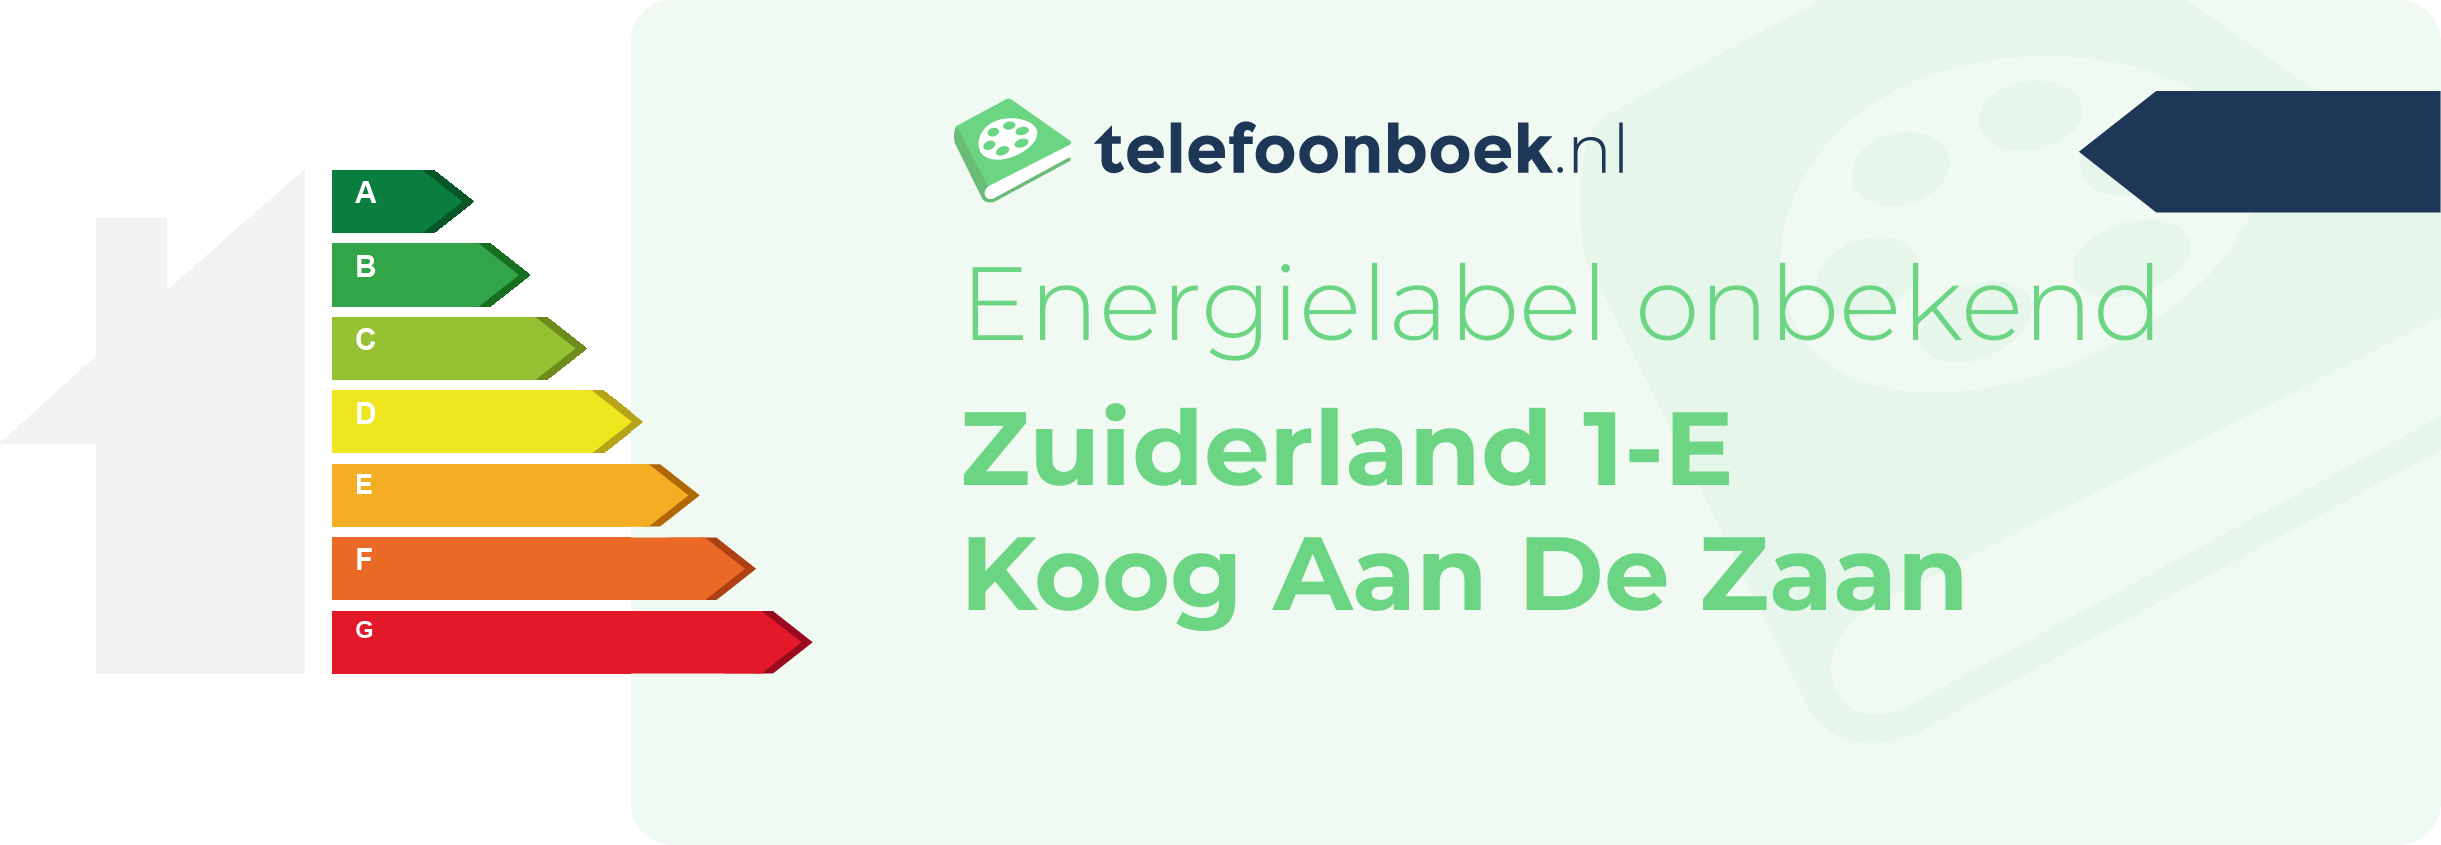 Energielabel Zuiderland 1-E Koog Aan De Zaan